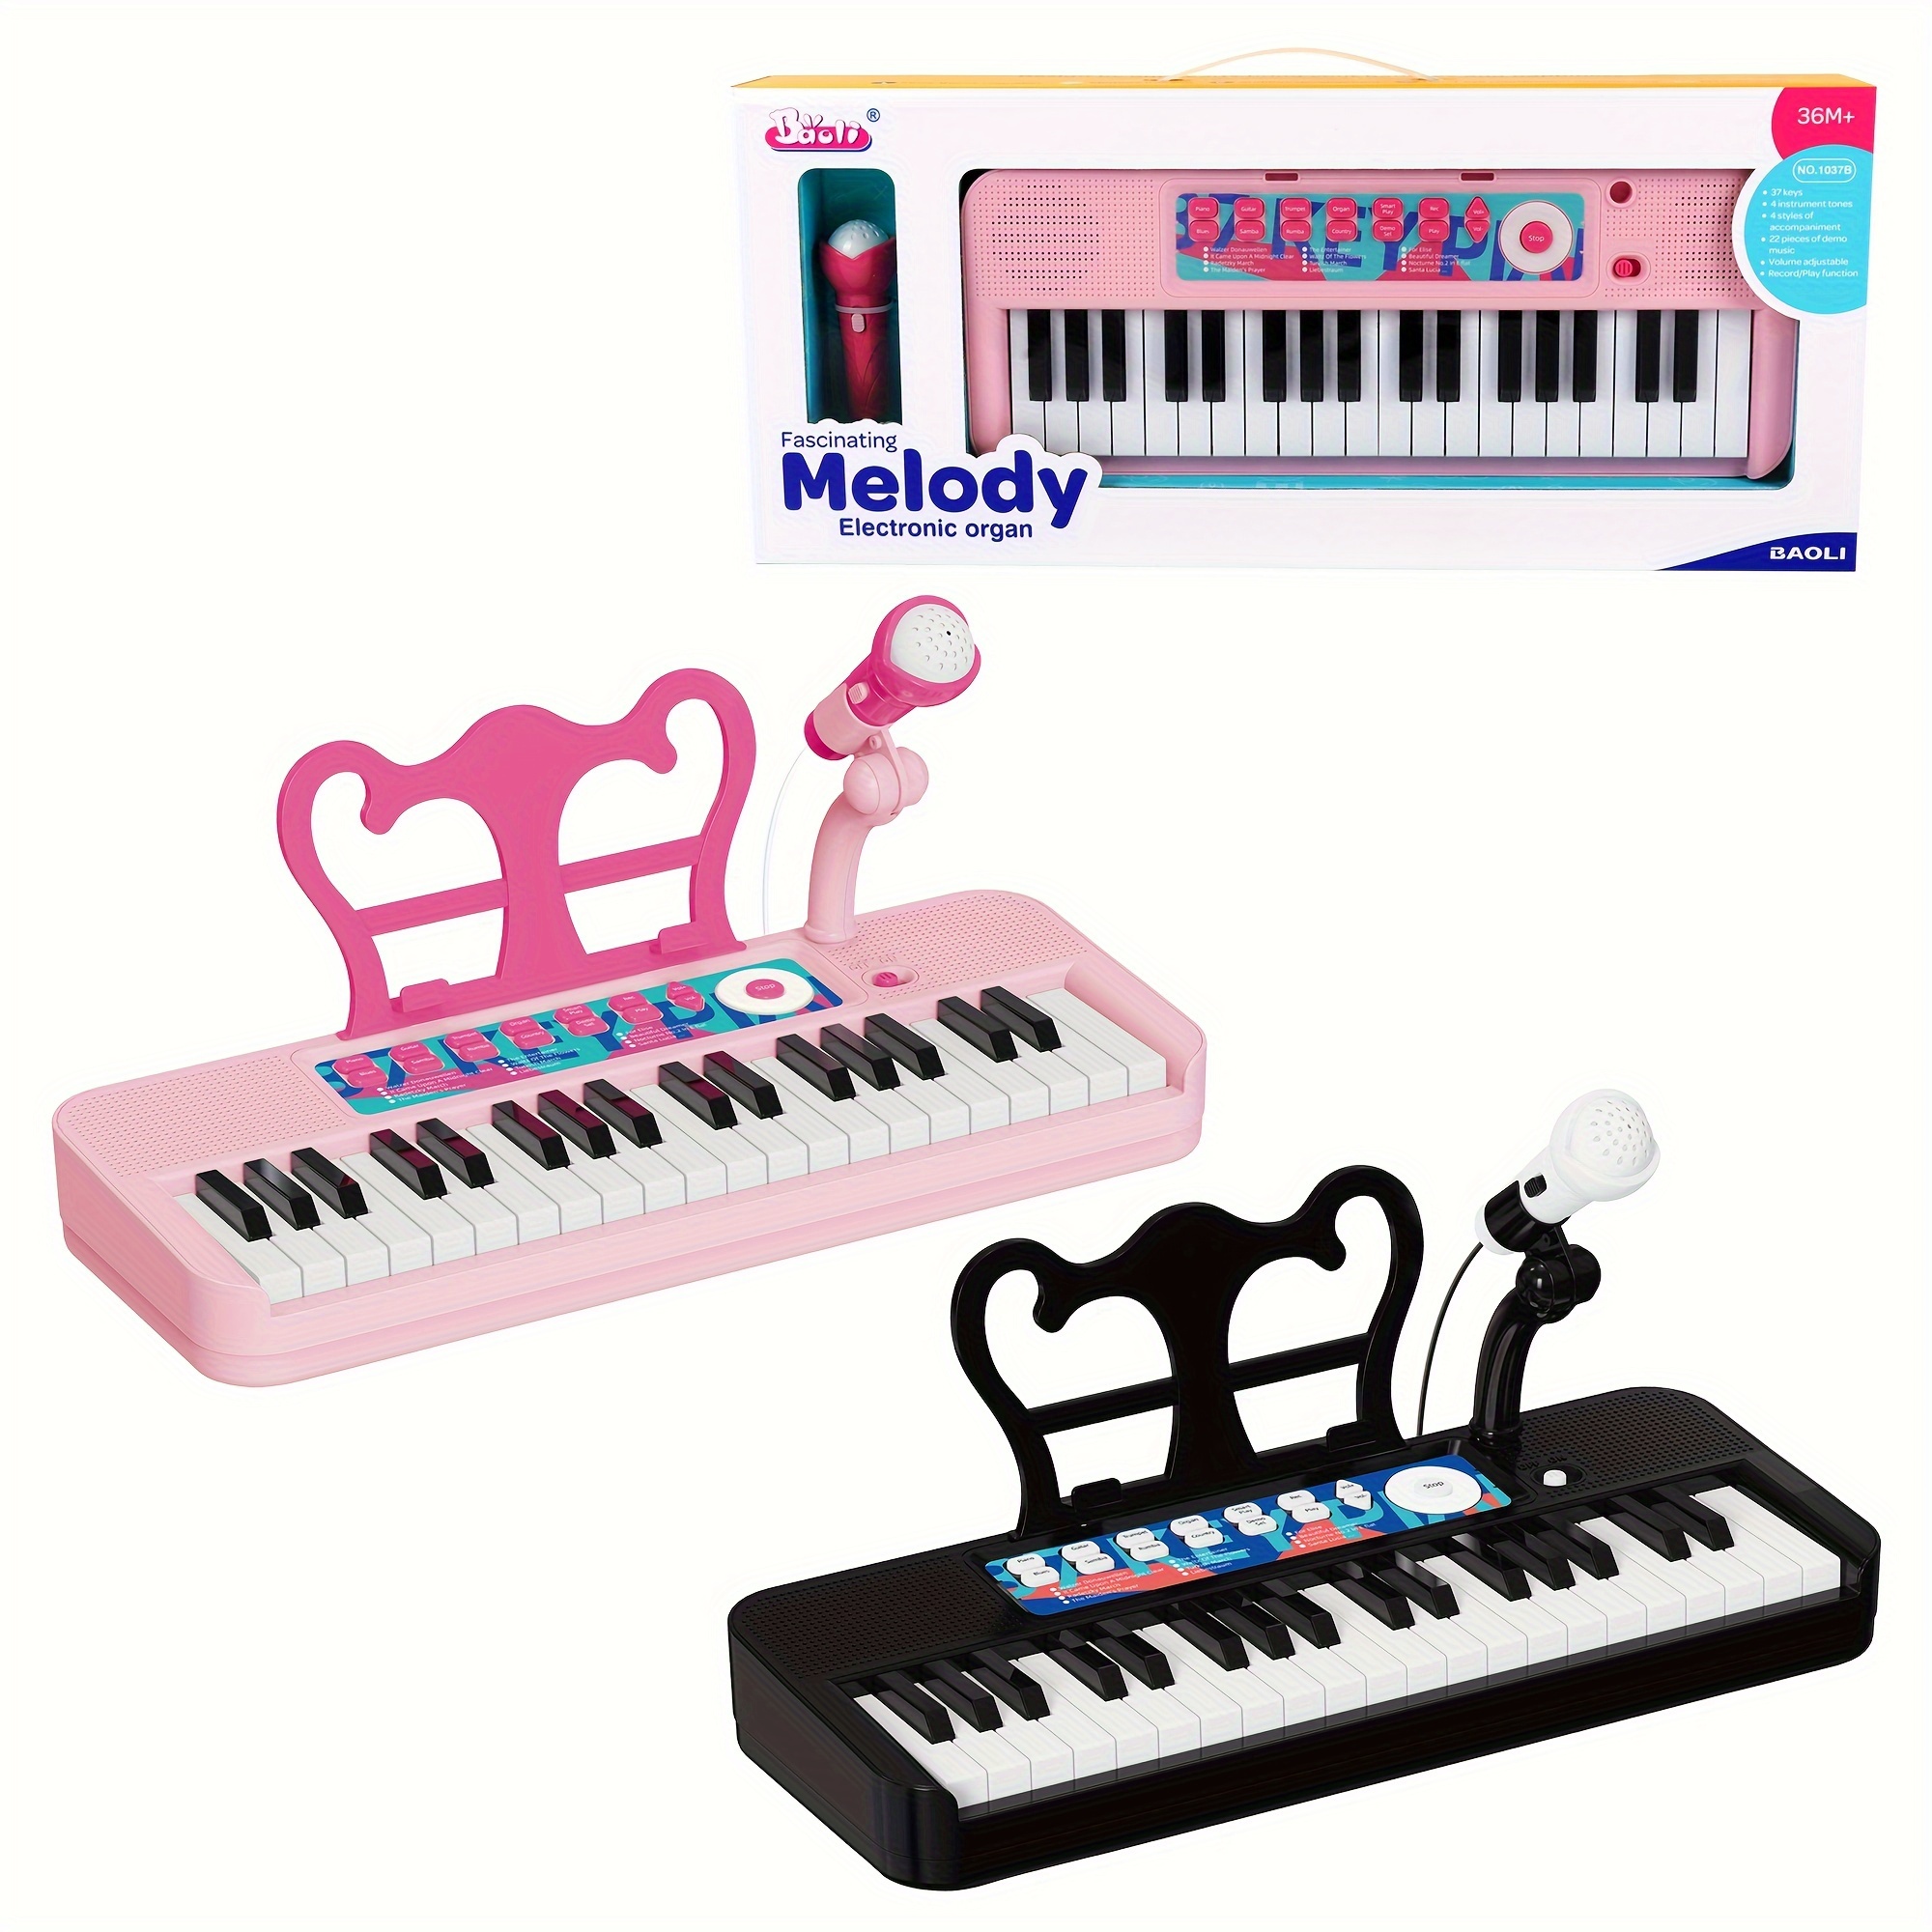 Jouet piano pour bébés filles tout-petits rose piano clavier jouet 1 2 3  ans filles K 313107223204